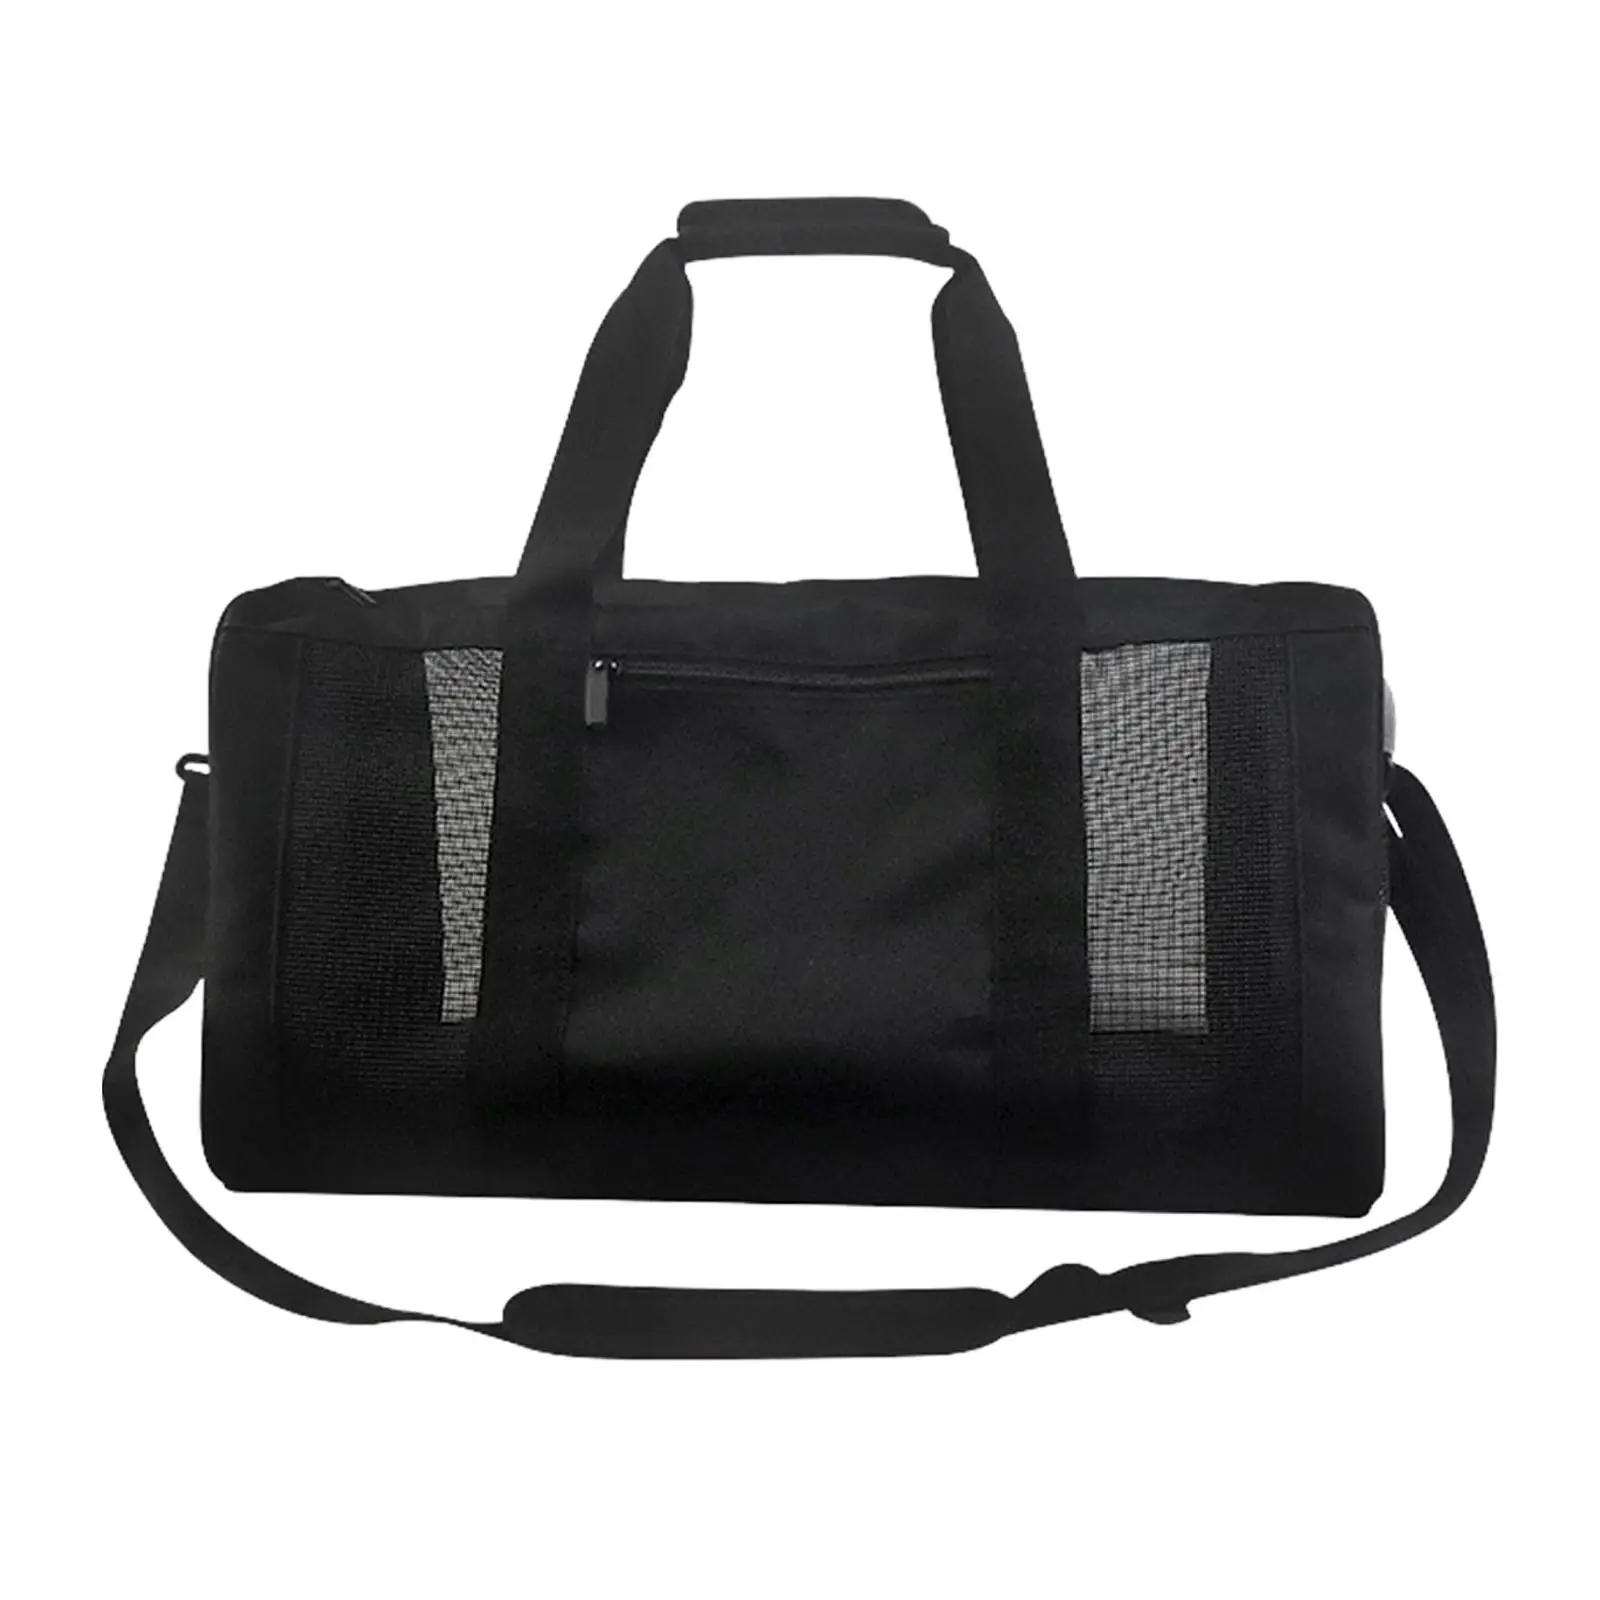 Mesh Gym Bag Travel Duffle Bag Adjustable Strap Cross Shoulder Gym Lightweight Travel Hiking Outdoor Sports Gym Bag Fitness Bag